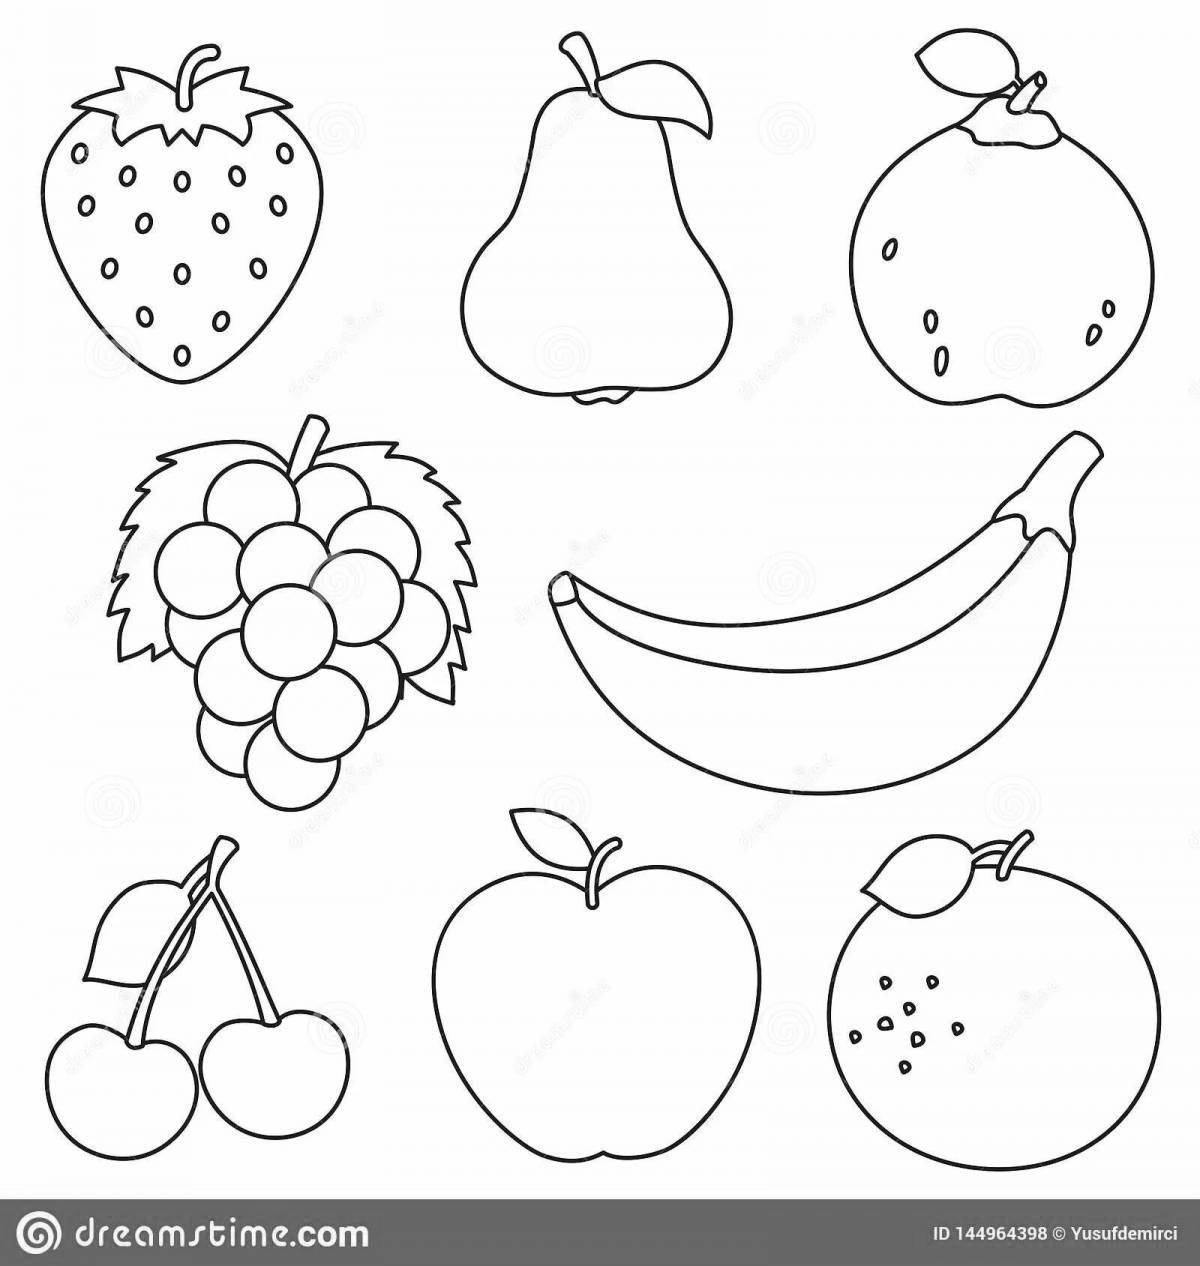 Игривая страница раскраски фруктов для детей 6-7 лет